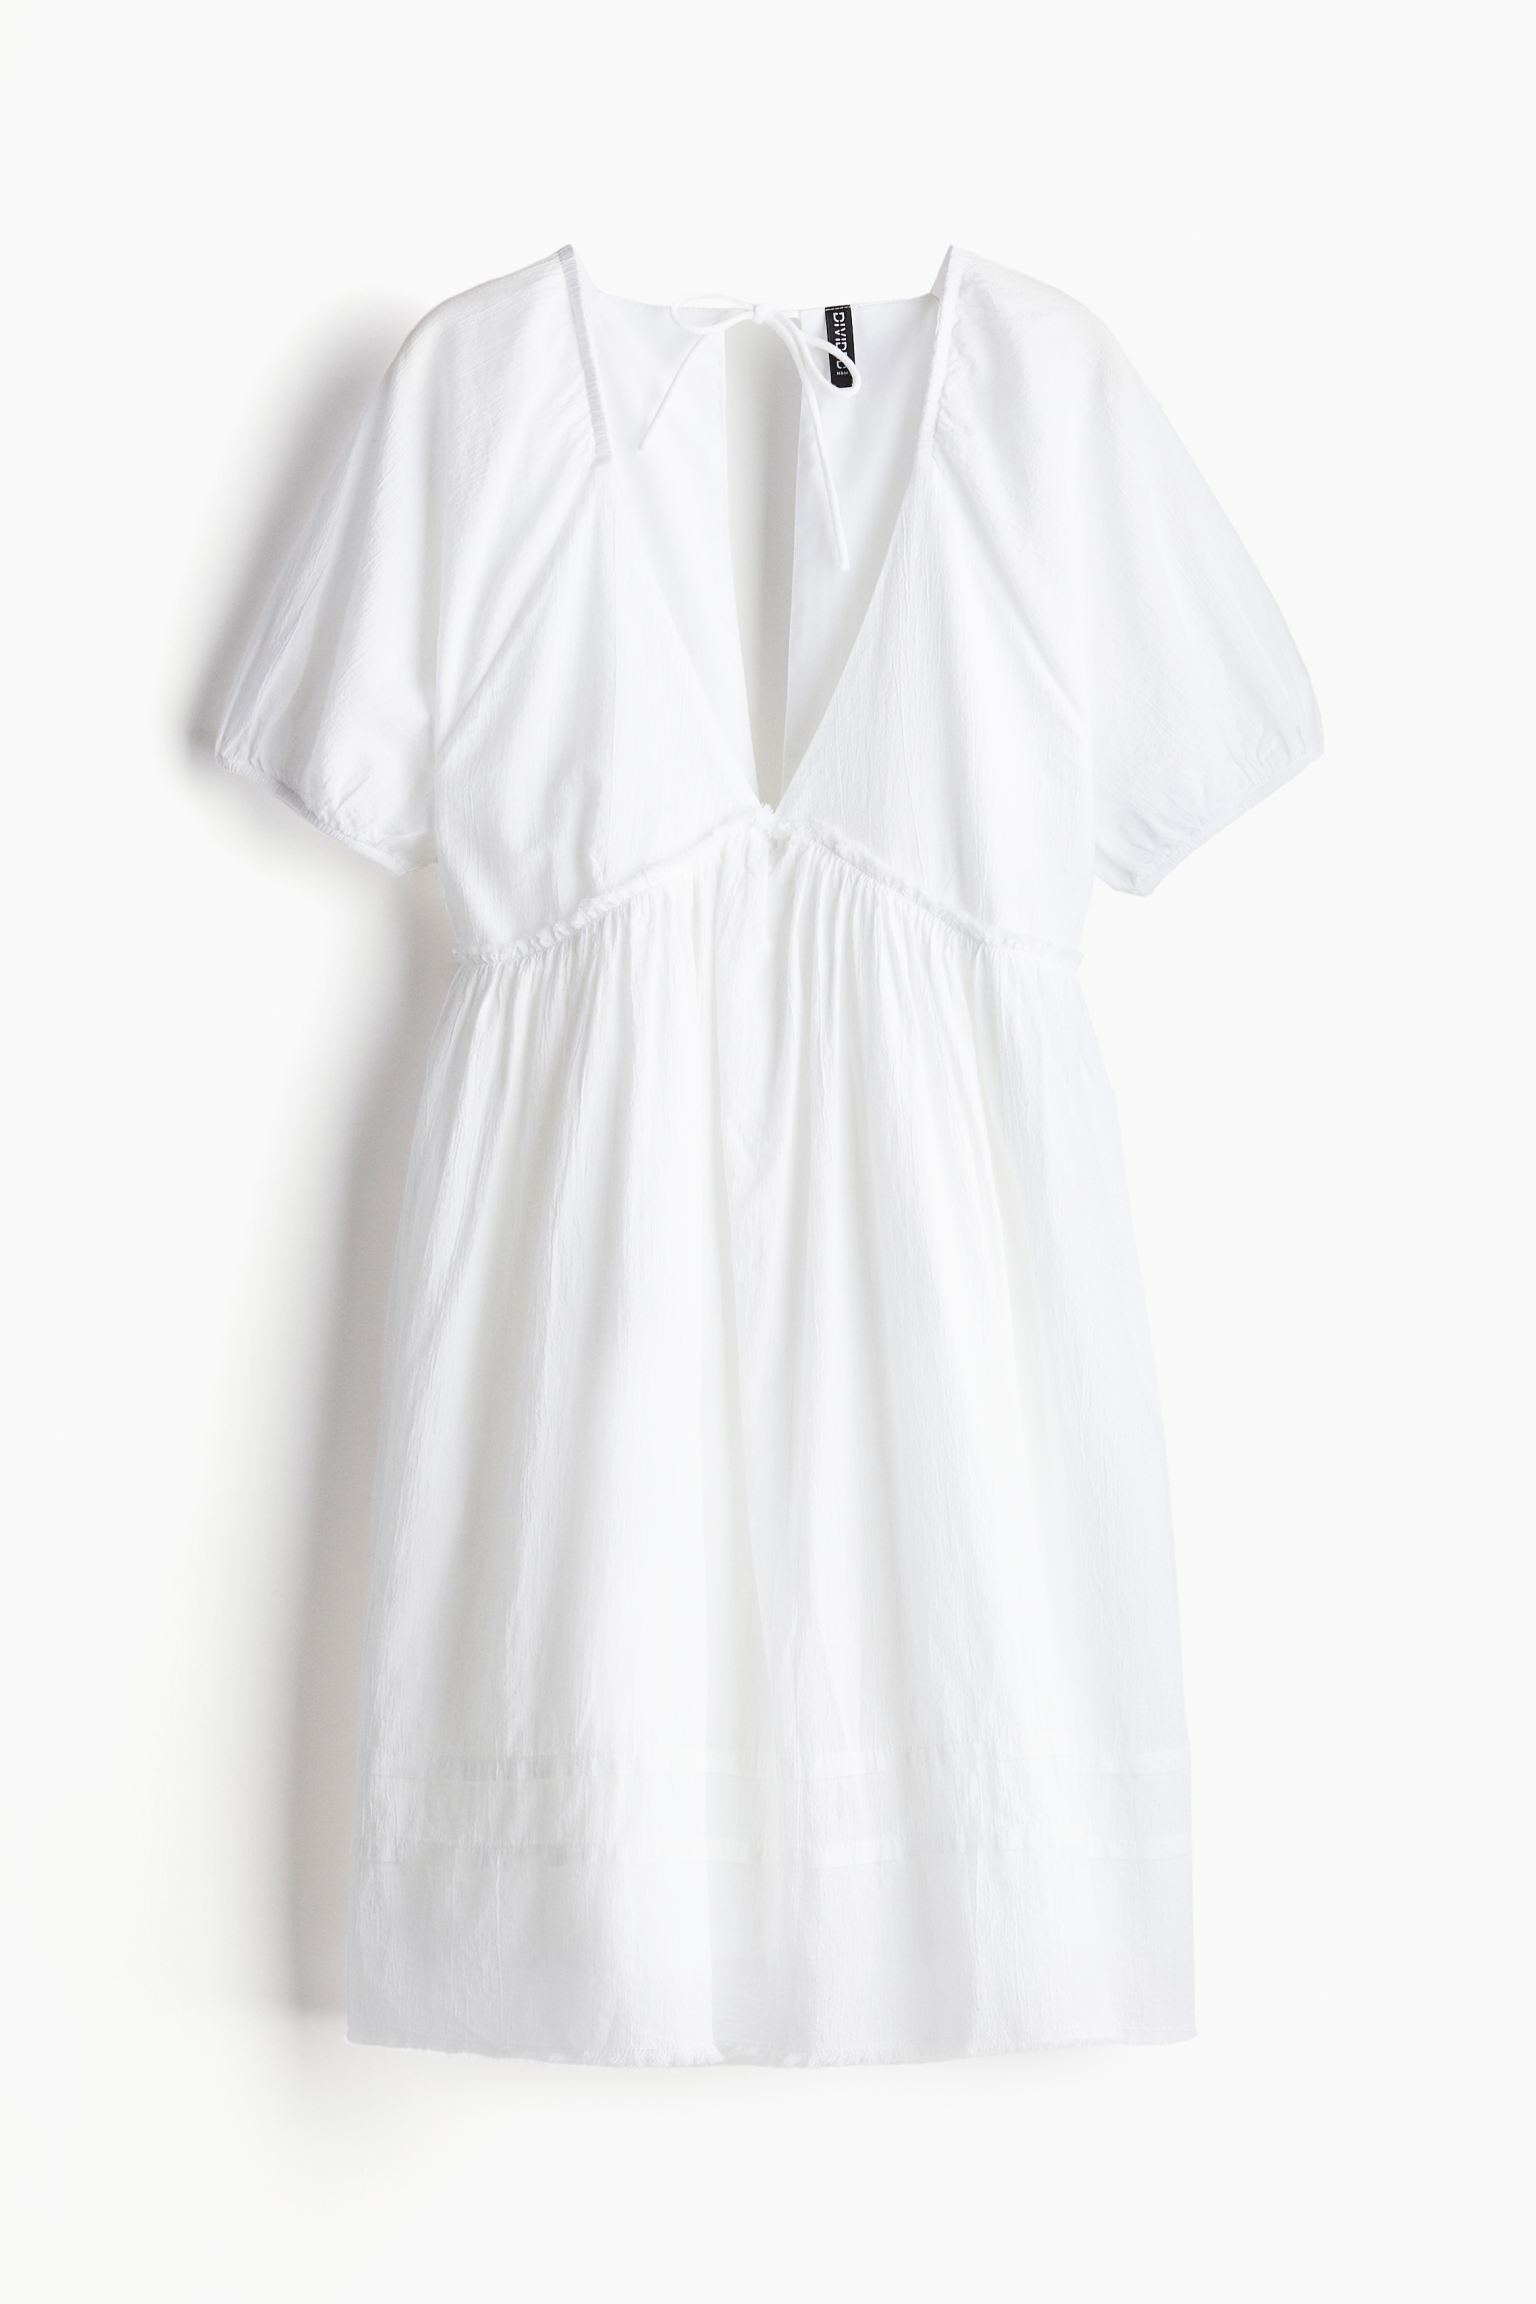 Платье H&M Tie-detail Crinkled Easy-wear, белый платье короткое v образный вырез короткие рукава 40 черный